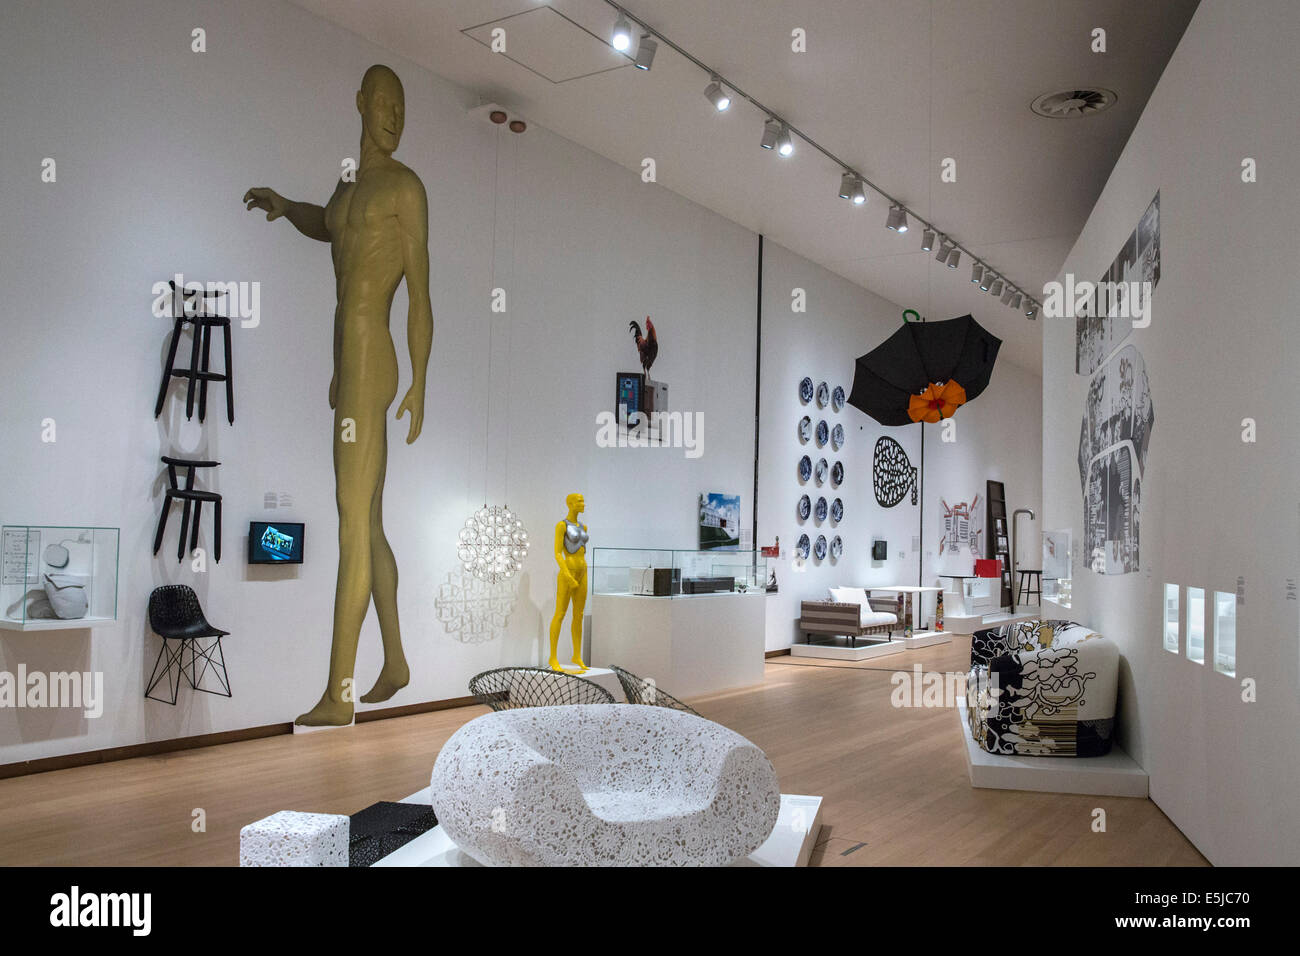 Pays-bas, Amsterdam, Stedelijk Museum, Musée d'art contemporain design collection néerlandaise Moooi Banque D'Images